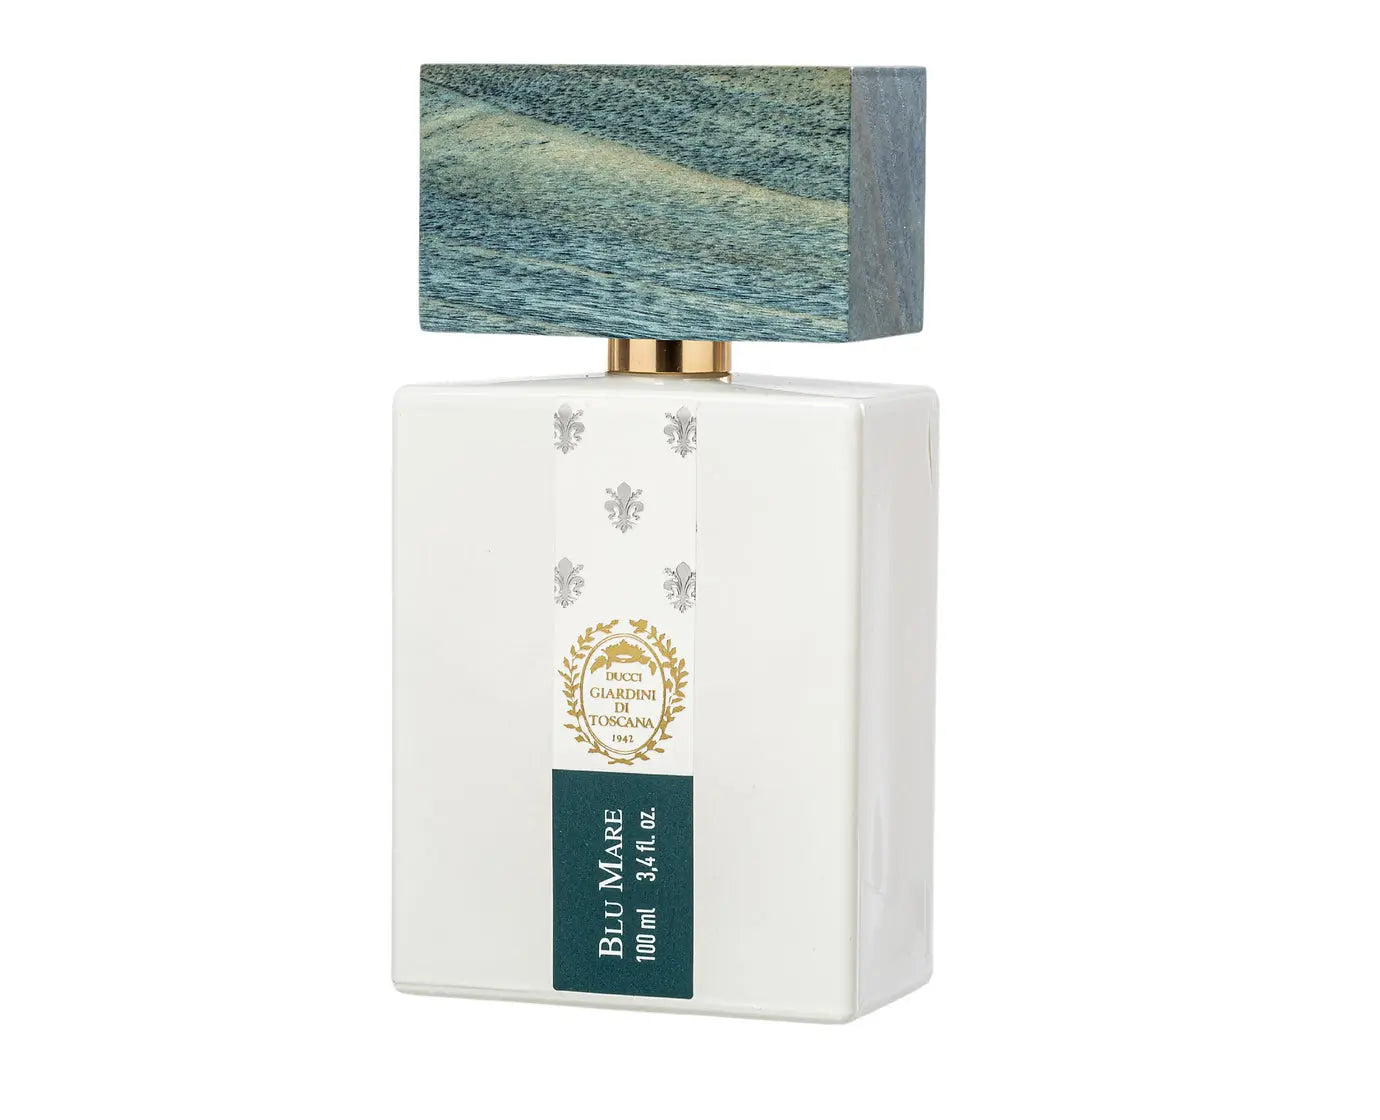 Gardens of Tuscany Blu Mare - 100 ml eau de parfum